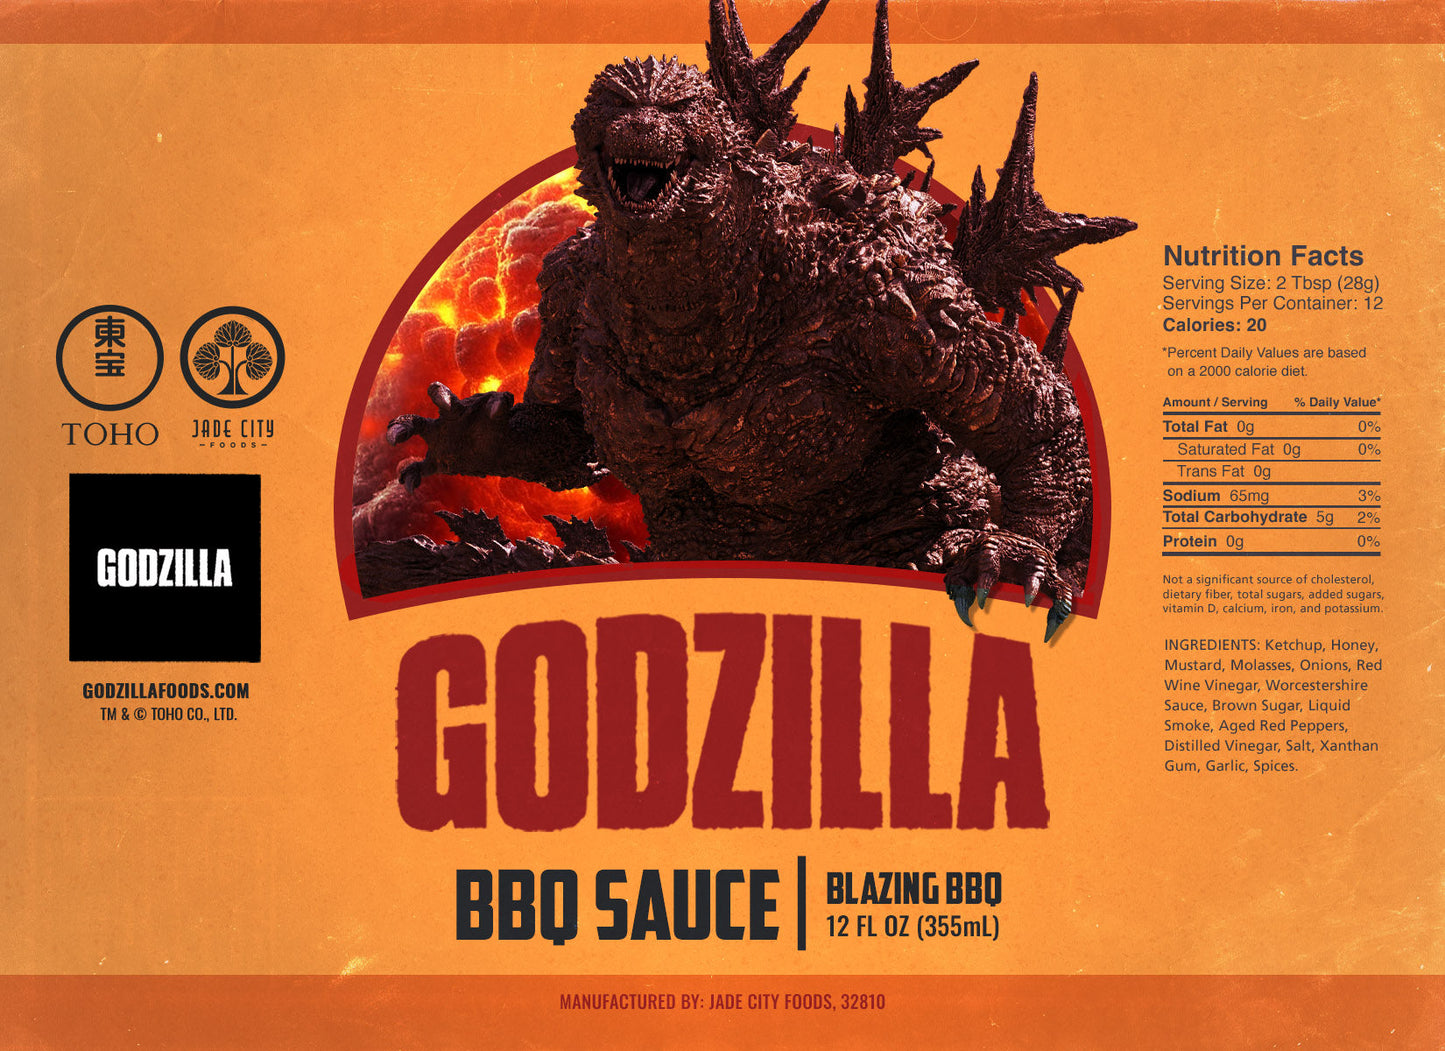 Godzilla's BBQ Sauce 3-Pack